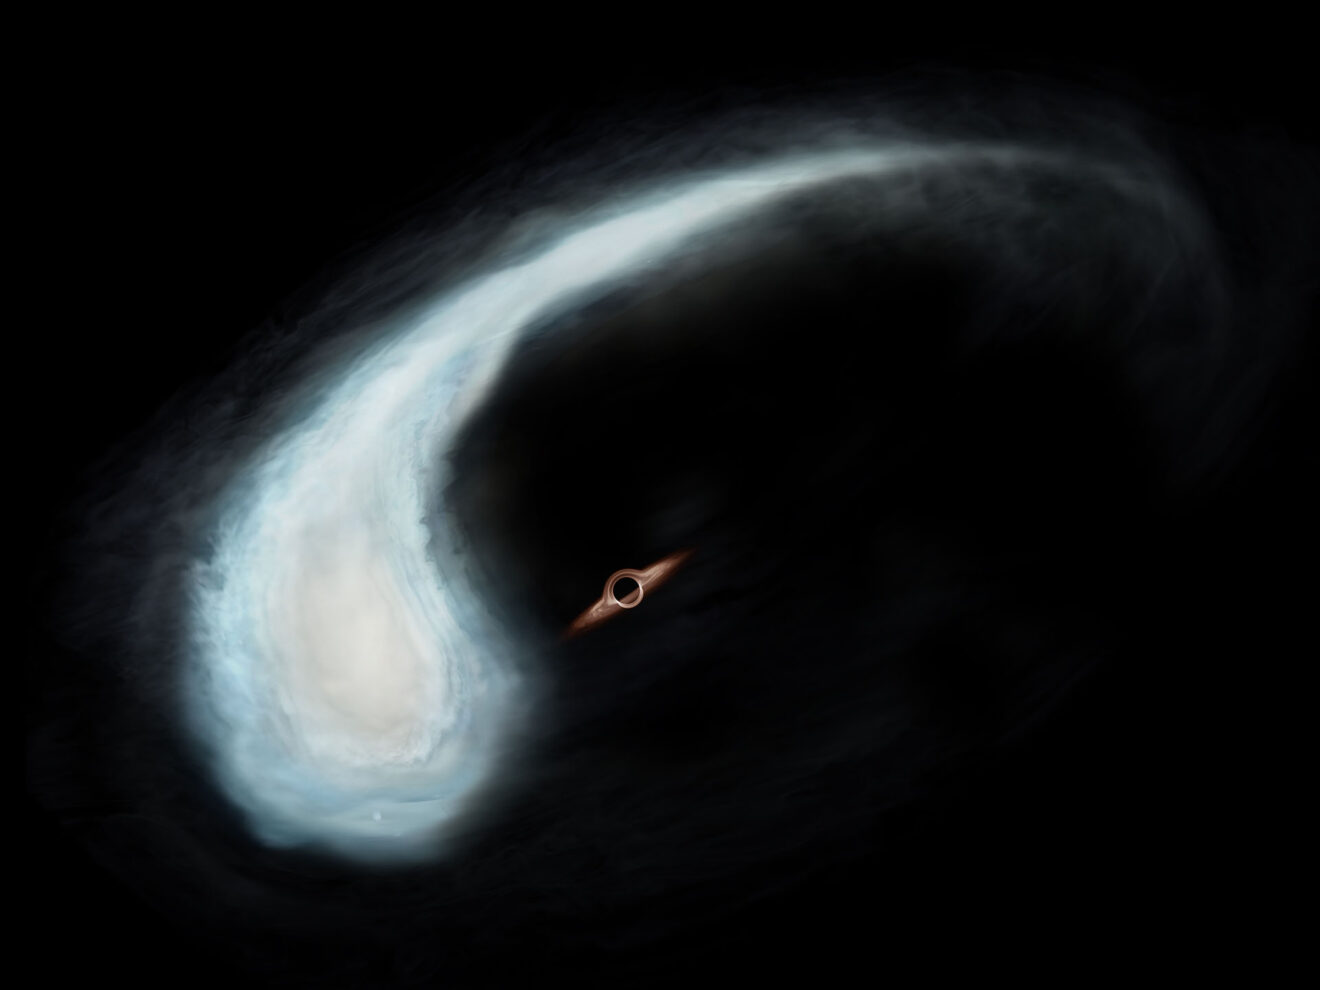 Grote moleculaire wolk 'het Kikkervisje' lijkt om een zwaar zwart gat te draaien